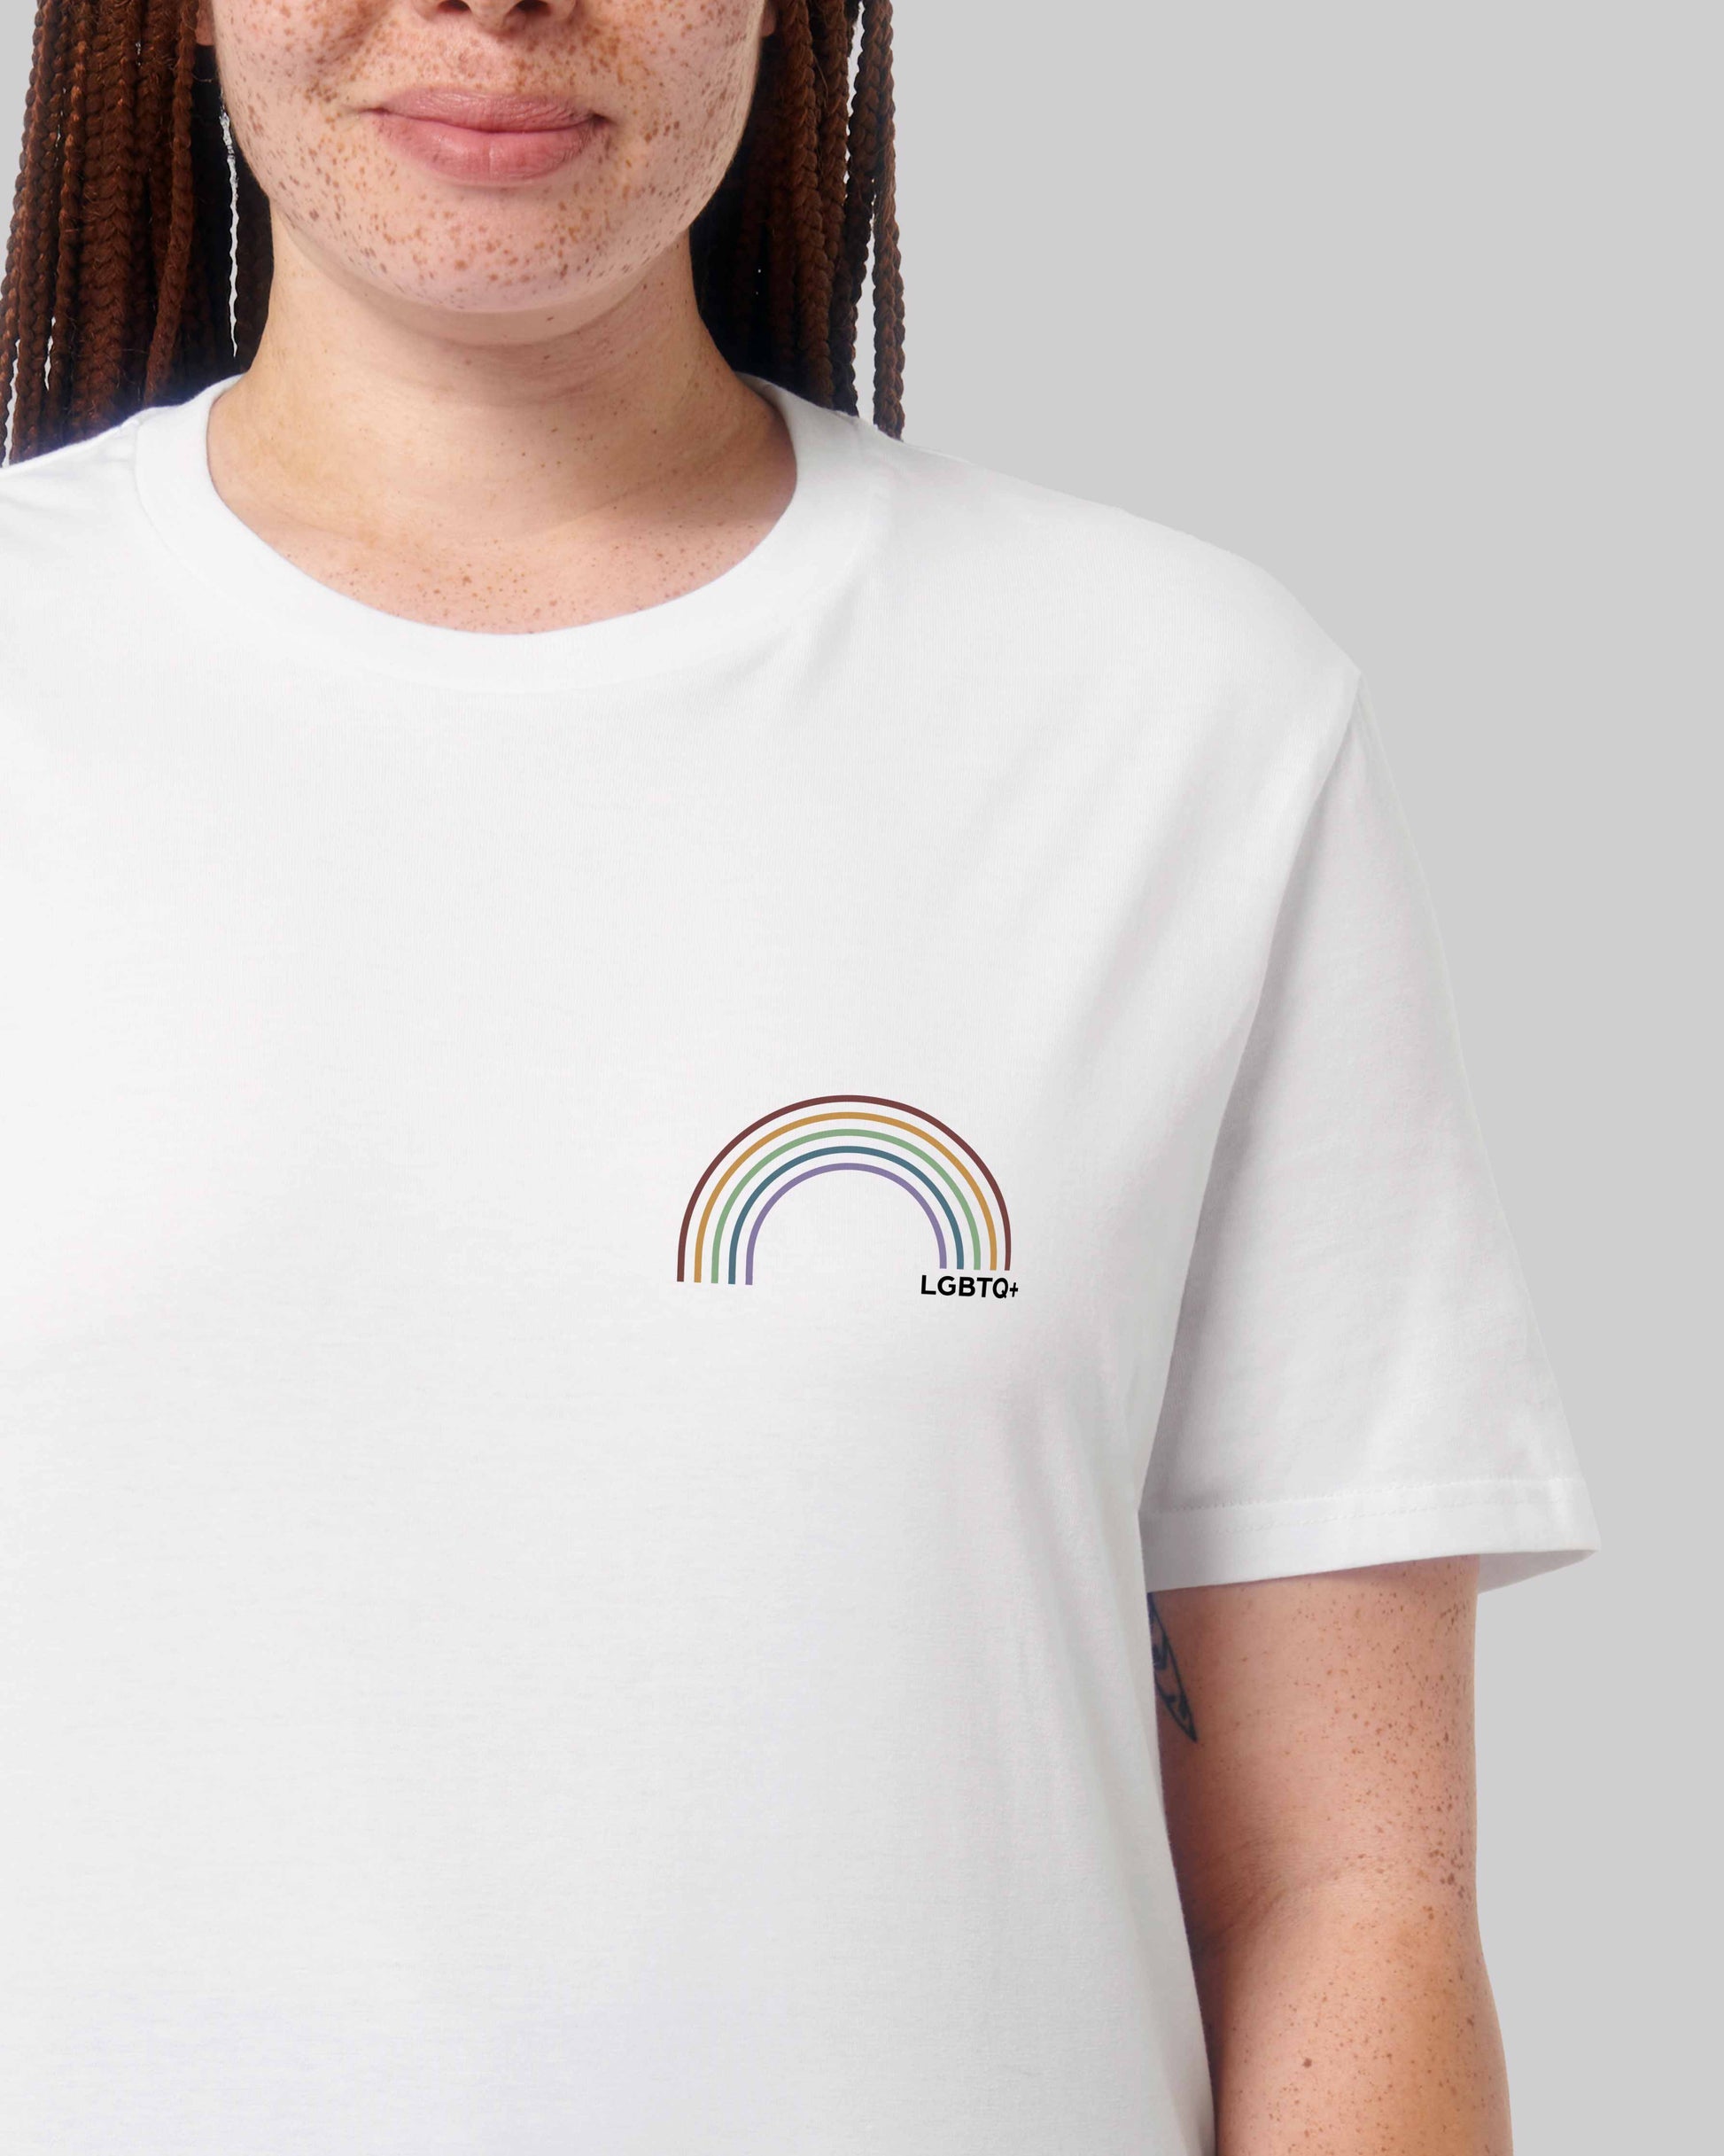 EINHORST® unisex Organic Shirt in Weiß mit dem Motiv "lgbtq+ Regenbogen" in der Kombination bunter Regenbogen mit schwarzer Schrift, Bild von weiblicher Person mit Shirt